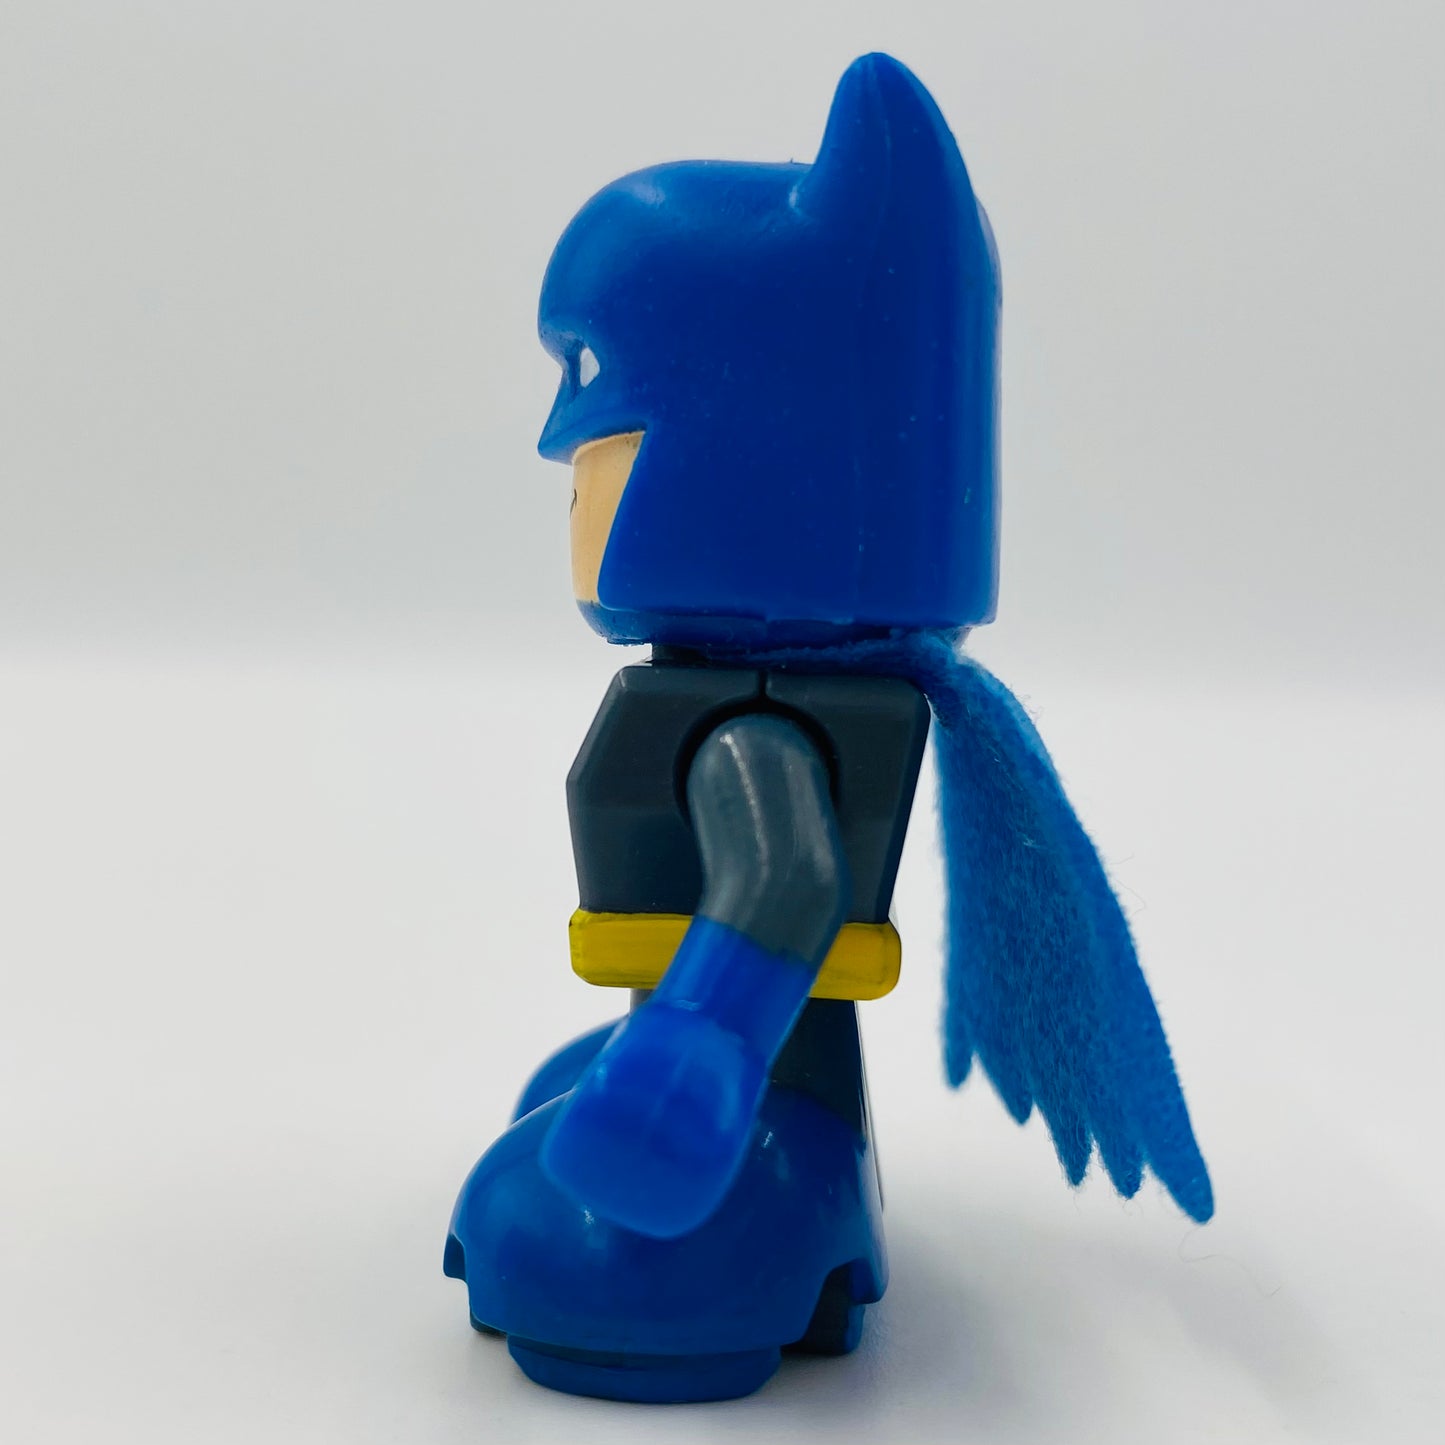 Fisher-Price Trio DC Super Friends Batman loose 2” figure (2010) Mattel